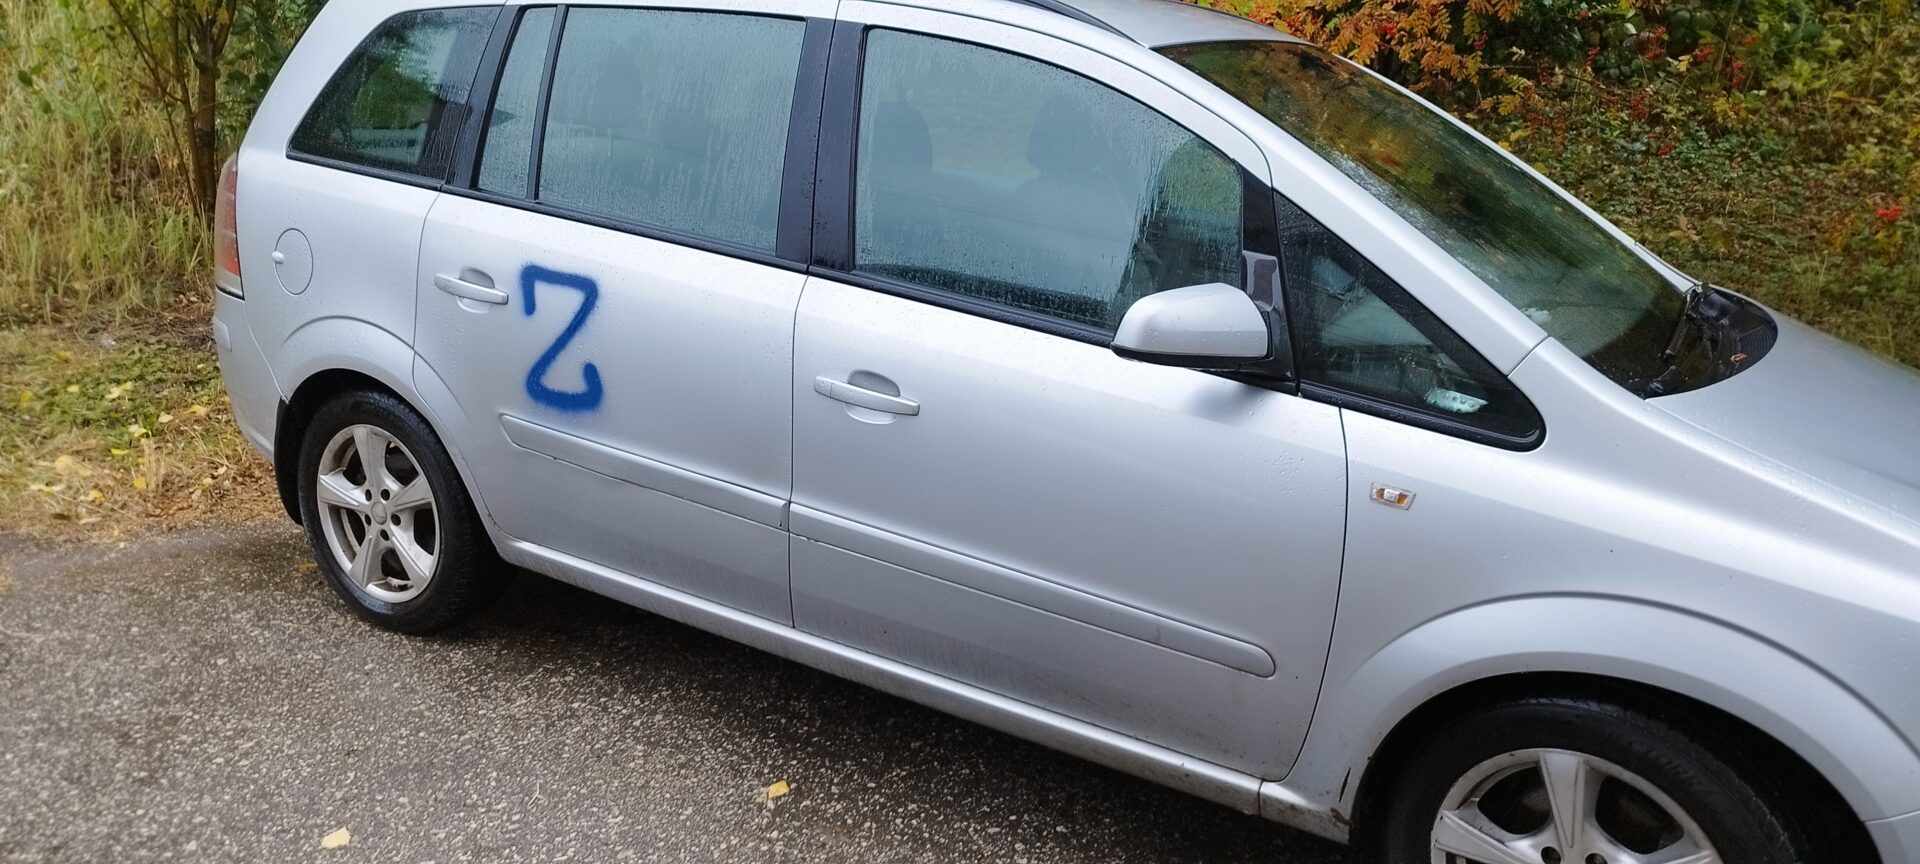 В спальном районе Рязани на автомобили краской нанесли знаки Z